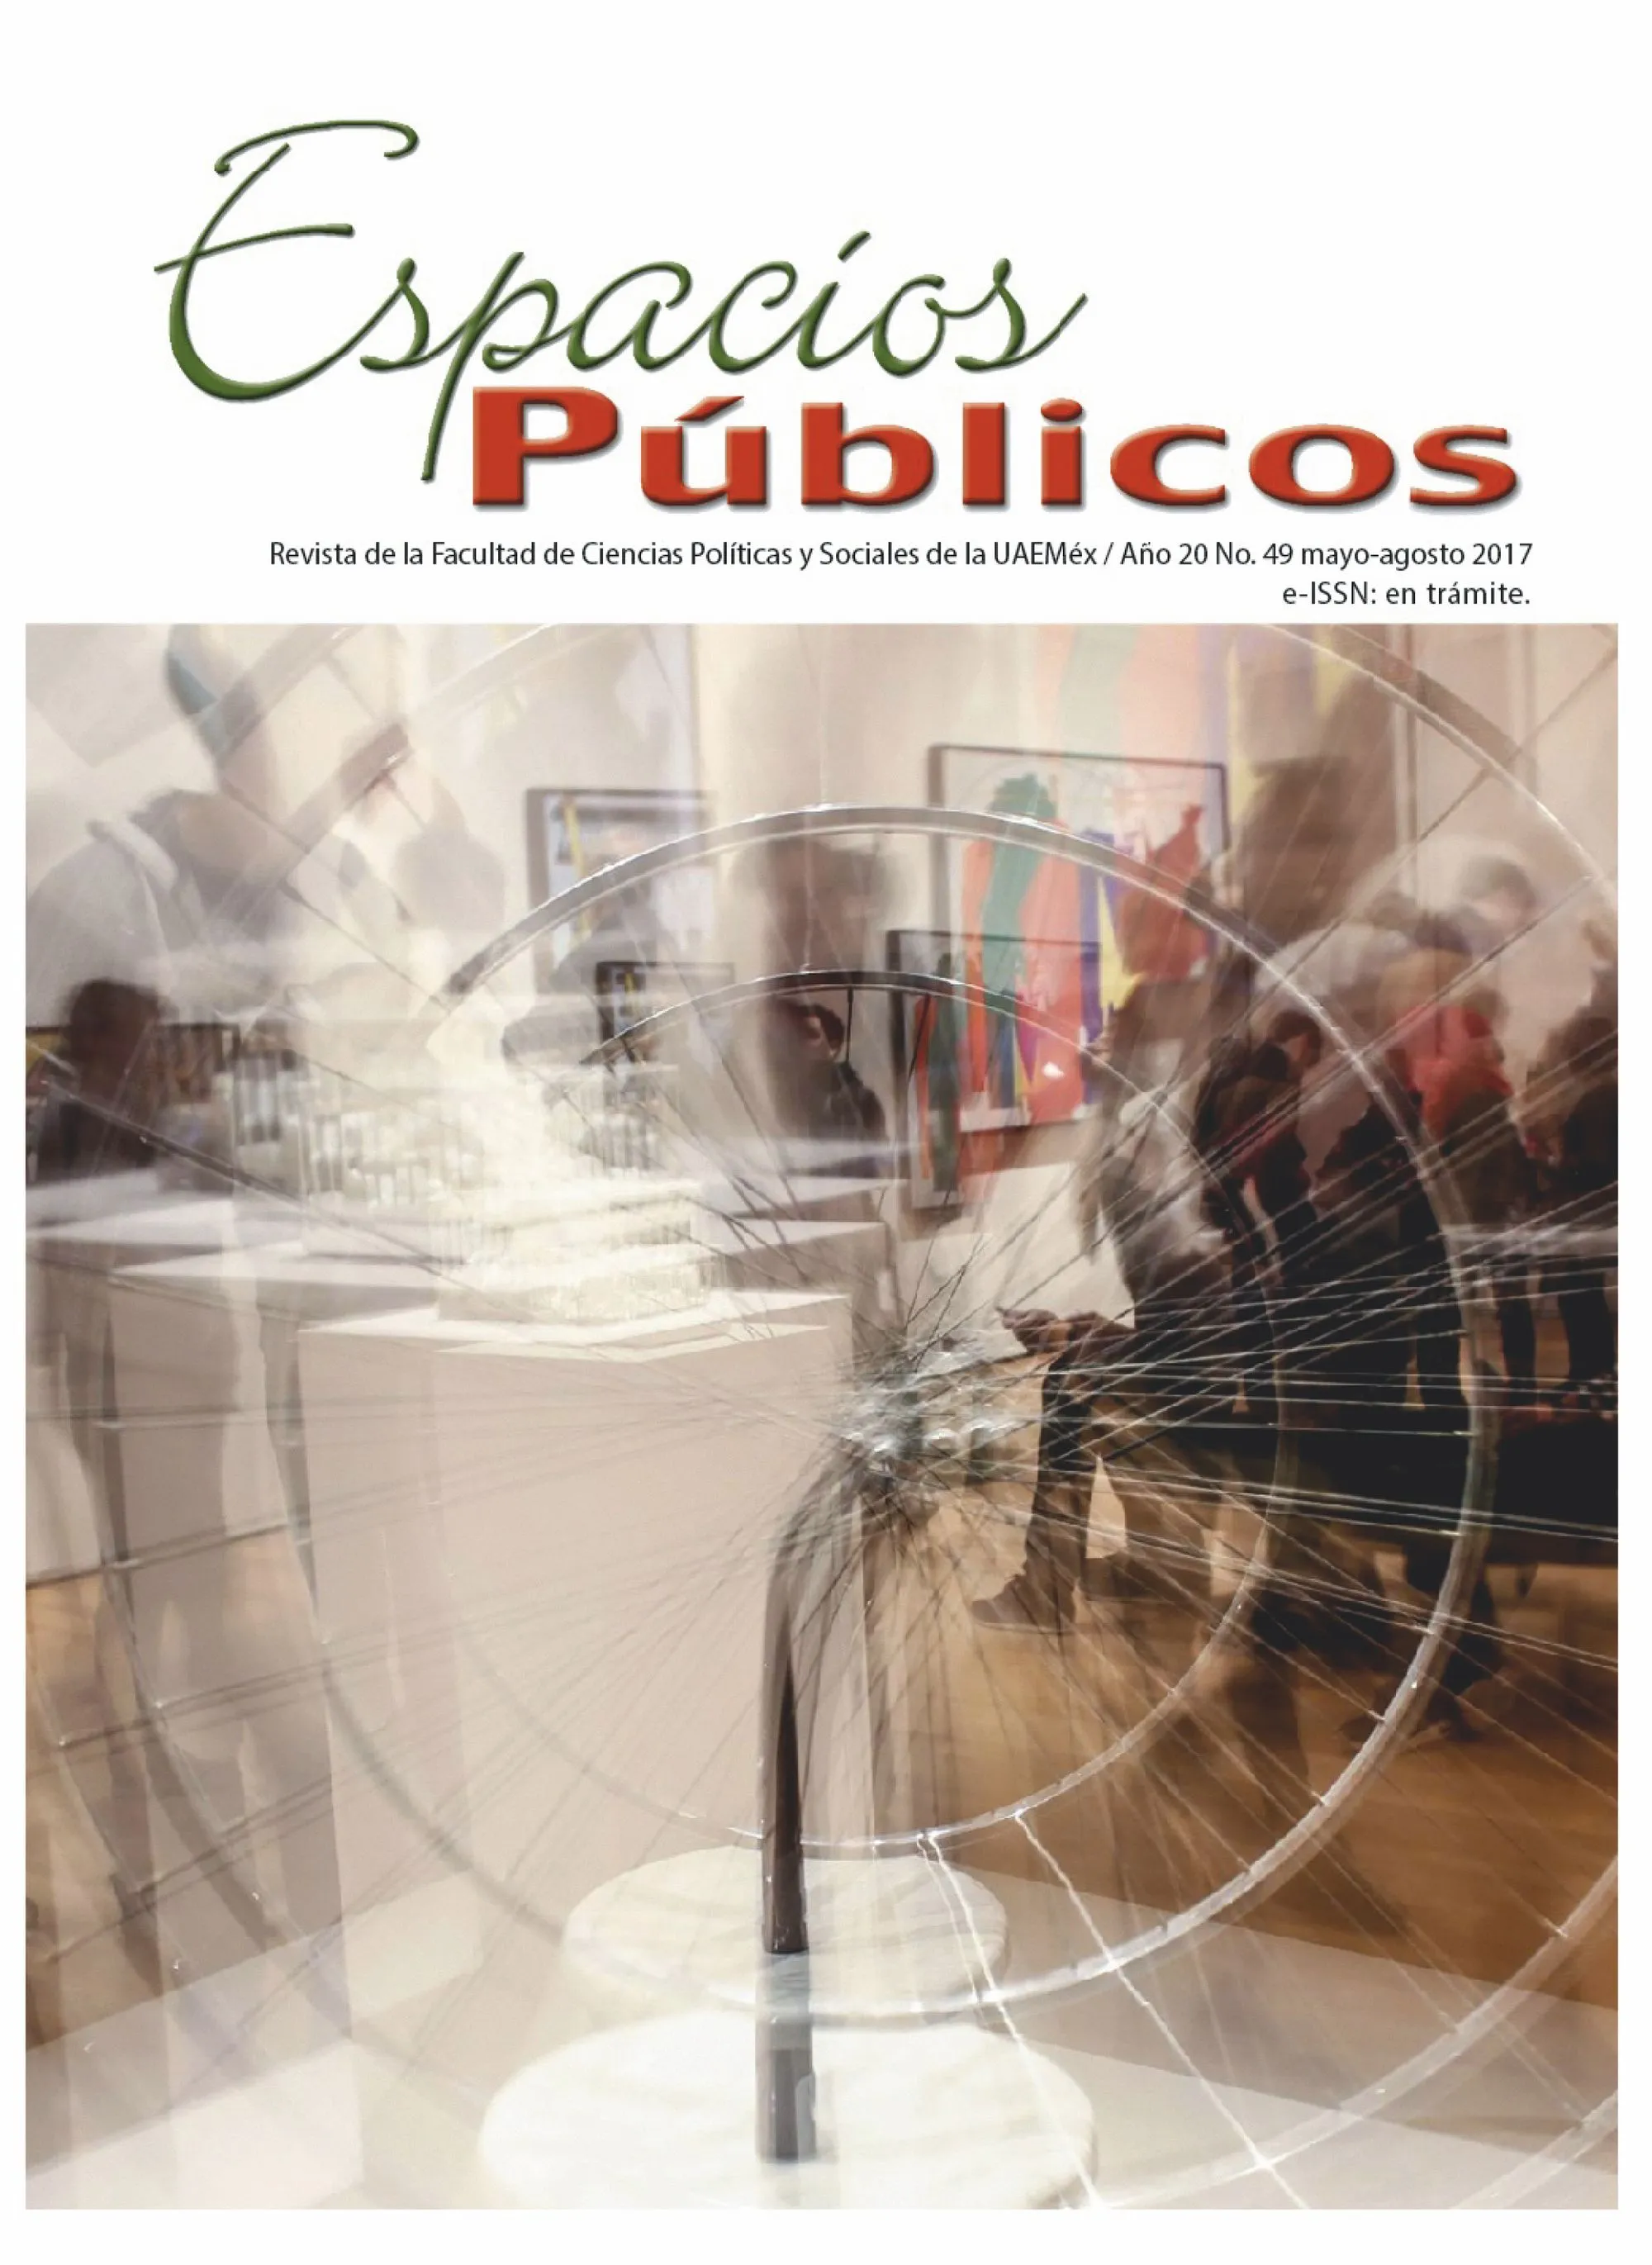 Revista Espacios públicos de la Facultad de Ciencias Políticas y Sociales de la Universidad Autónoma del Estado de México, 2017.